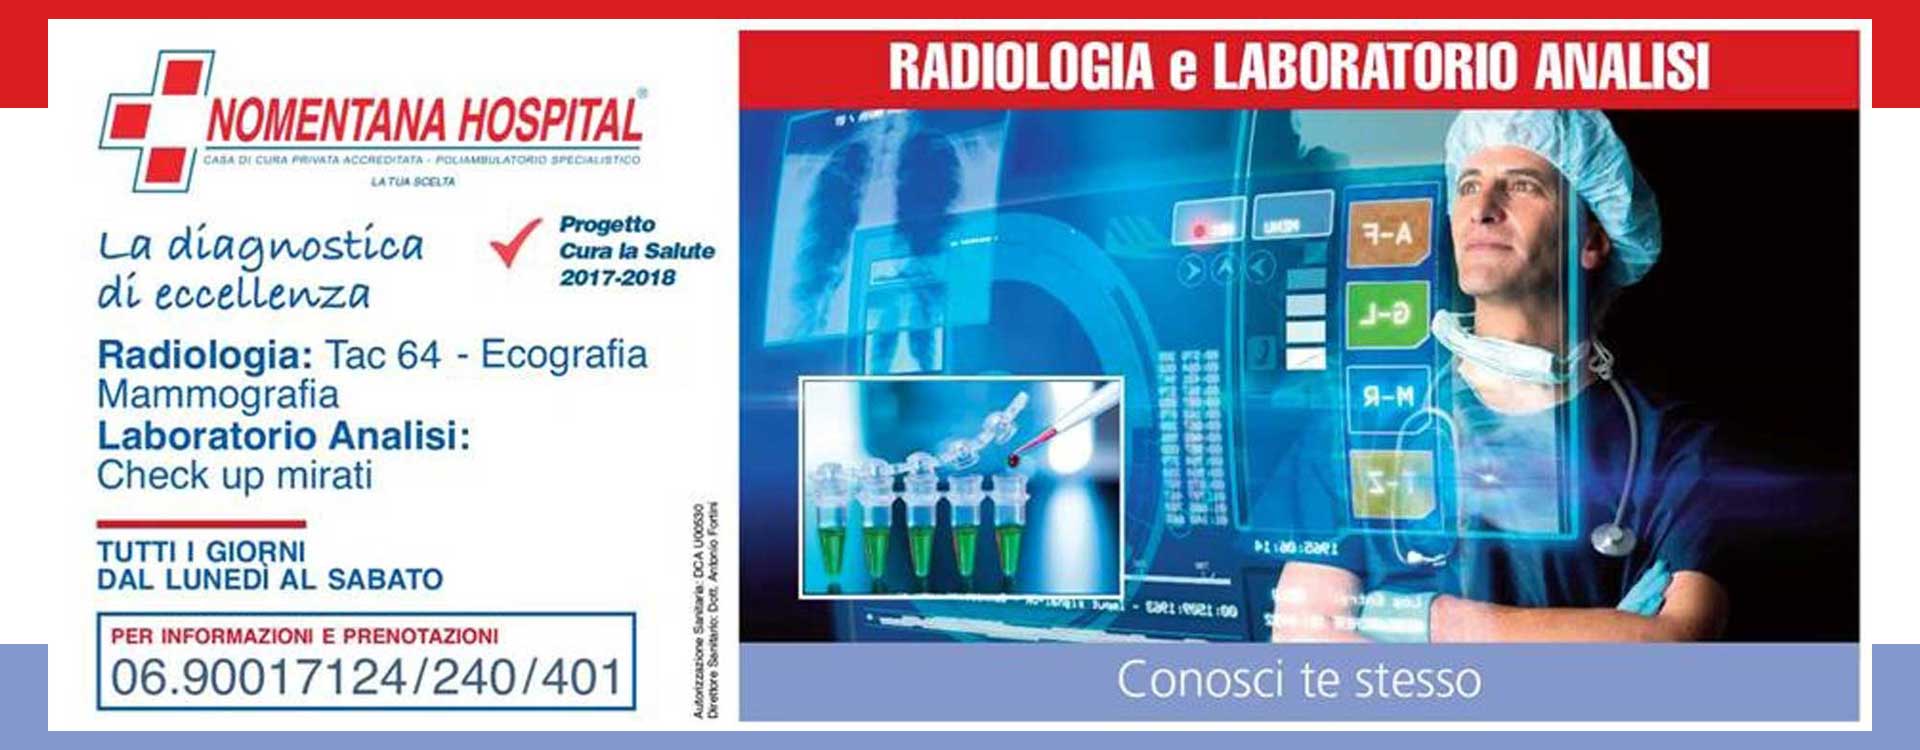 Radiologia e Laboratorio analisi